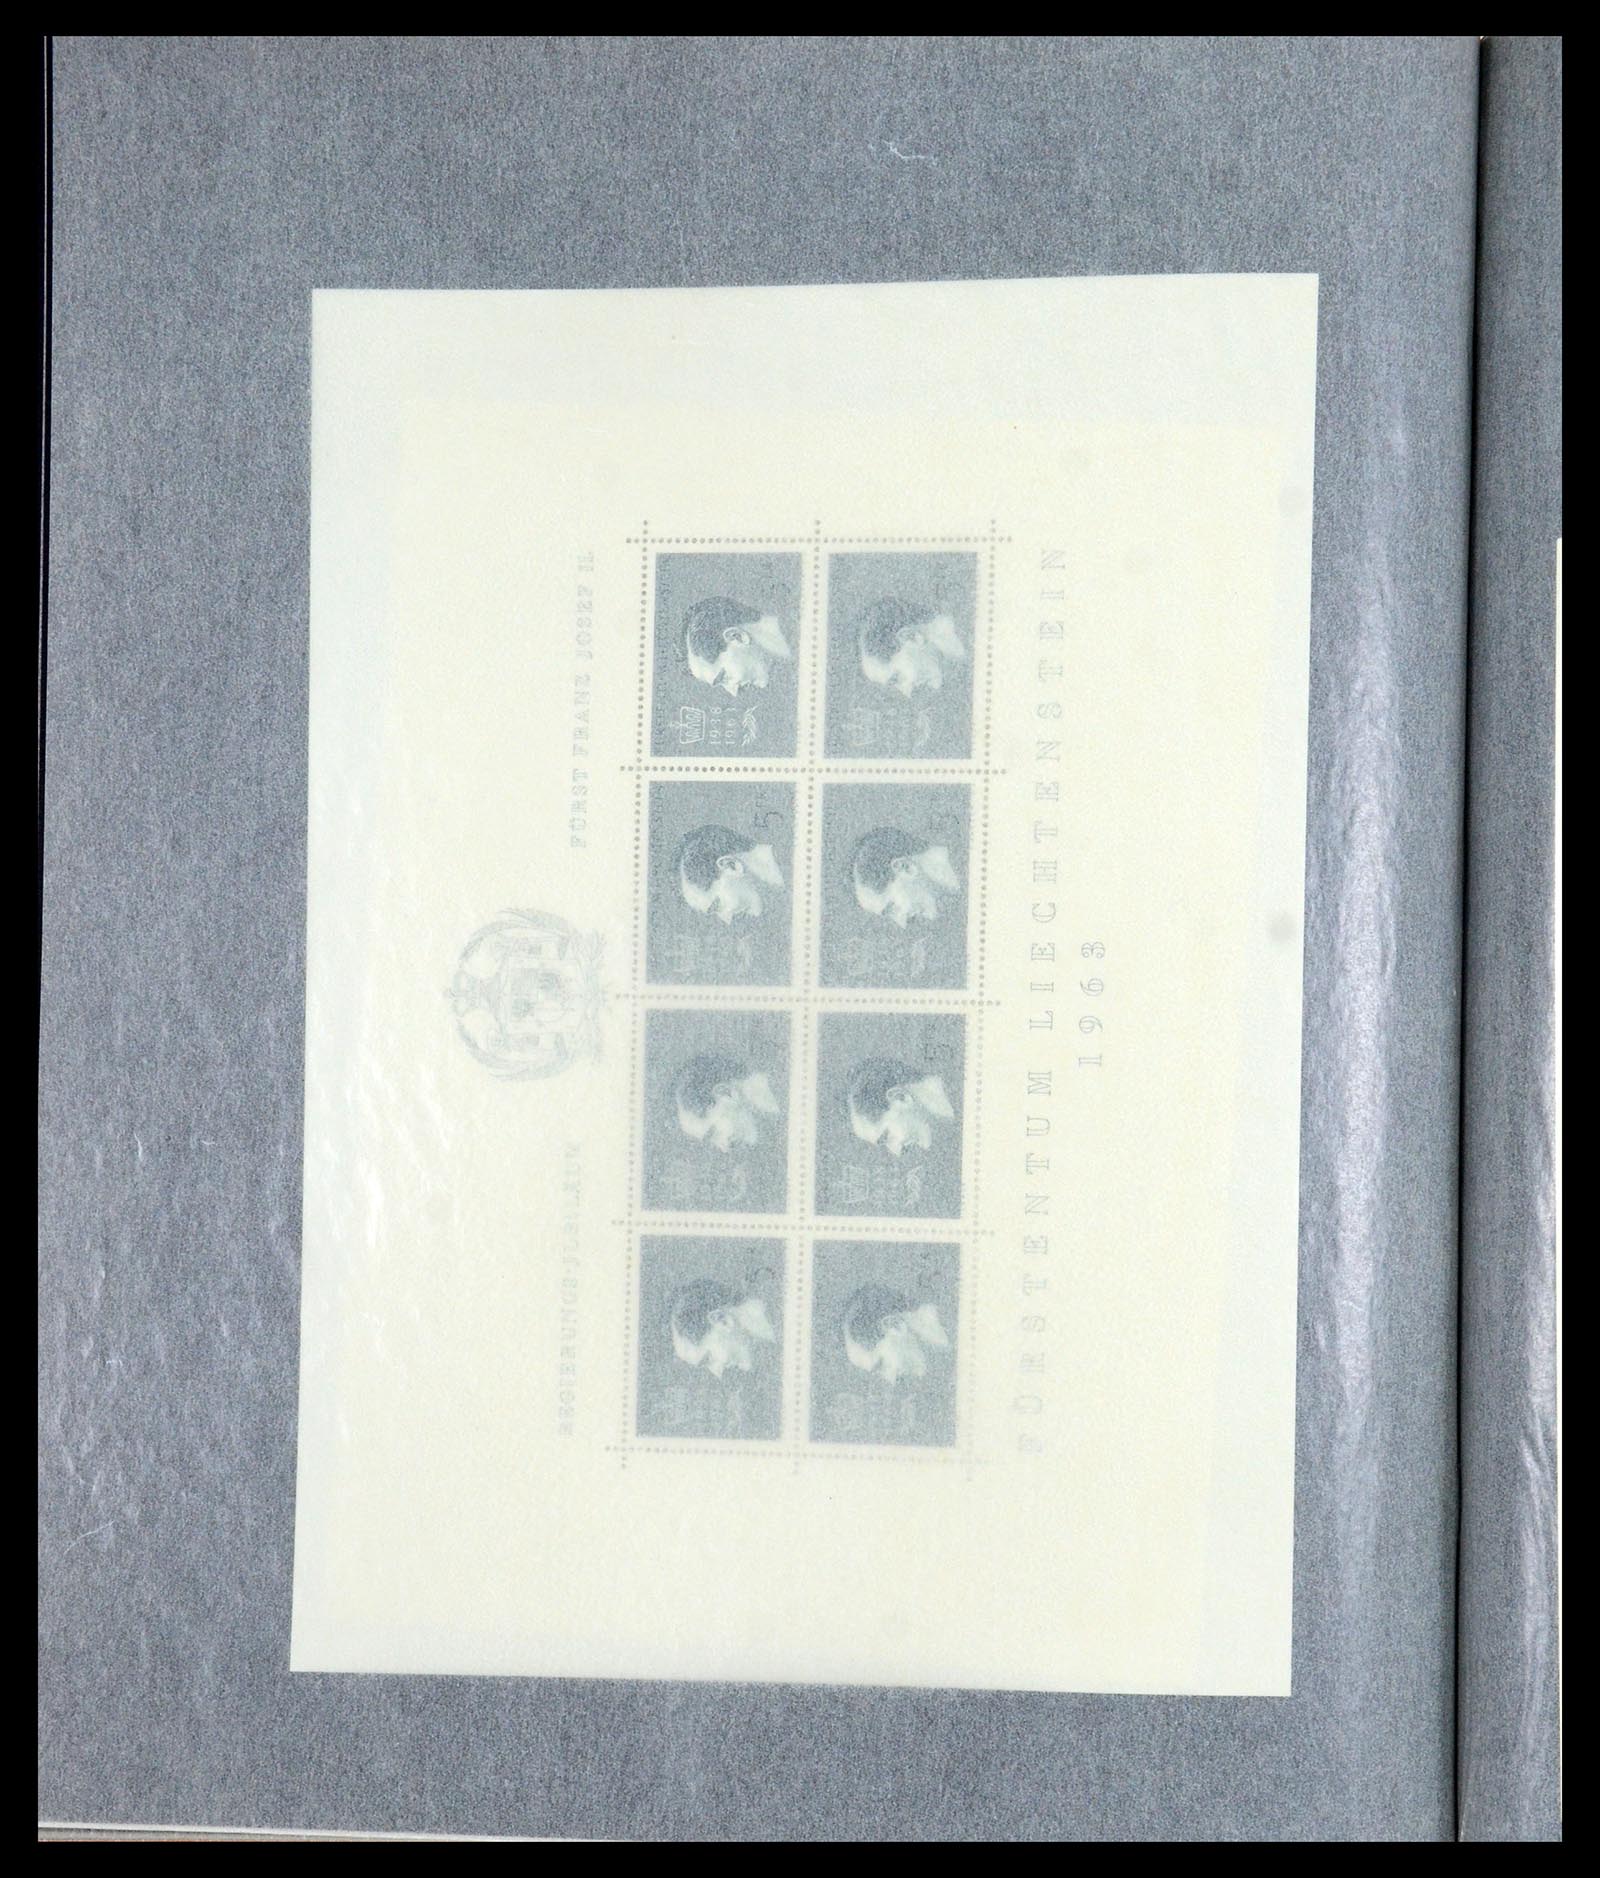 36280 205 - Stamp collection 36280 Liechtenstein souvenir sheets and sheetlets 1934-